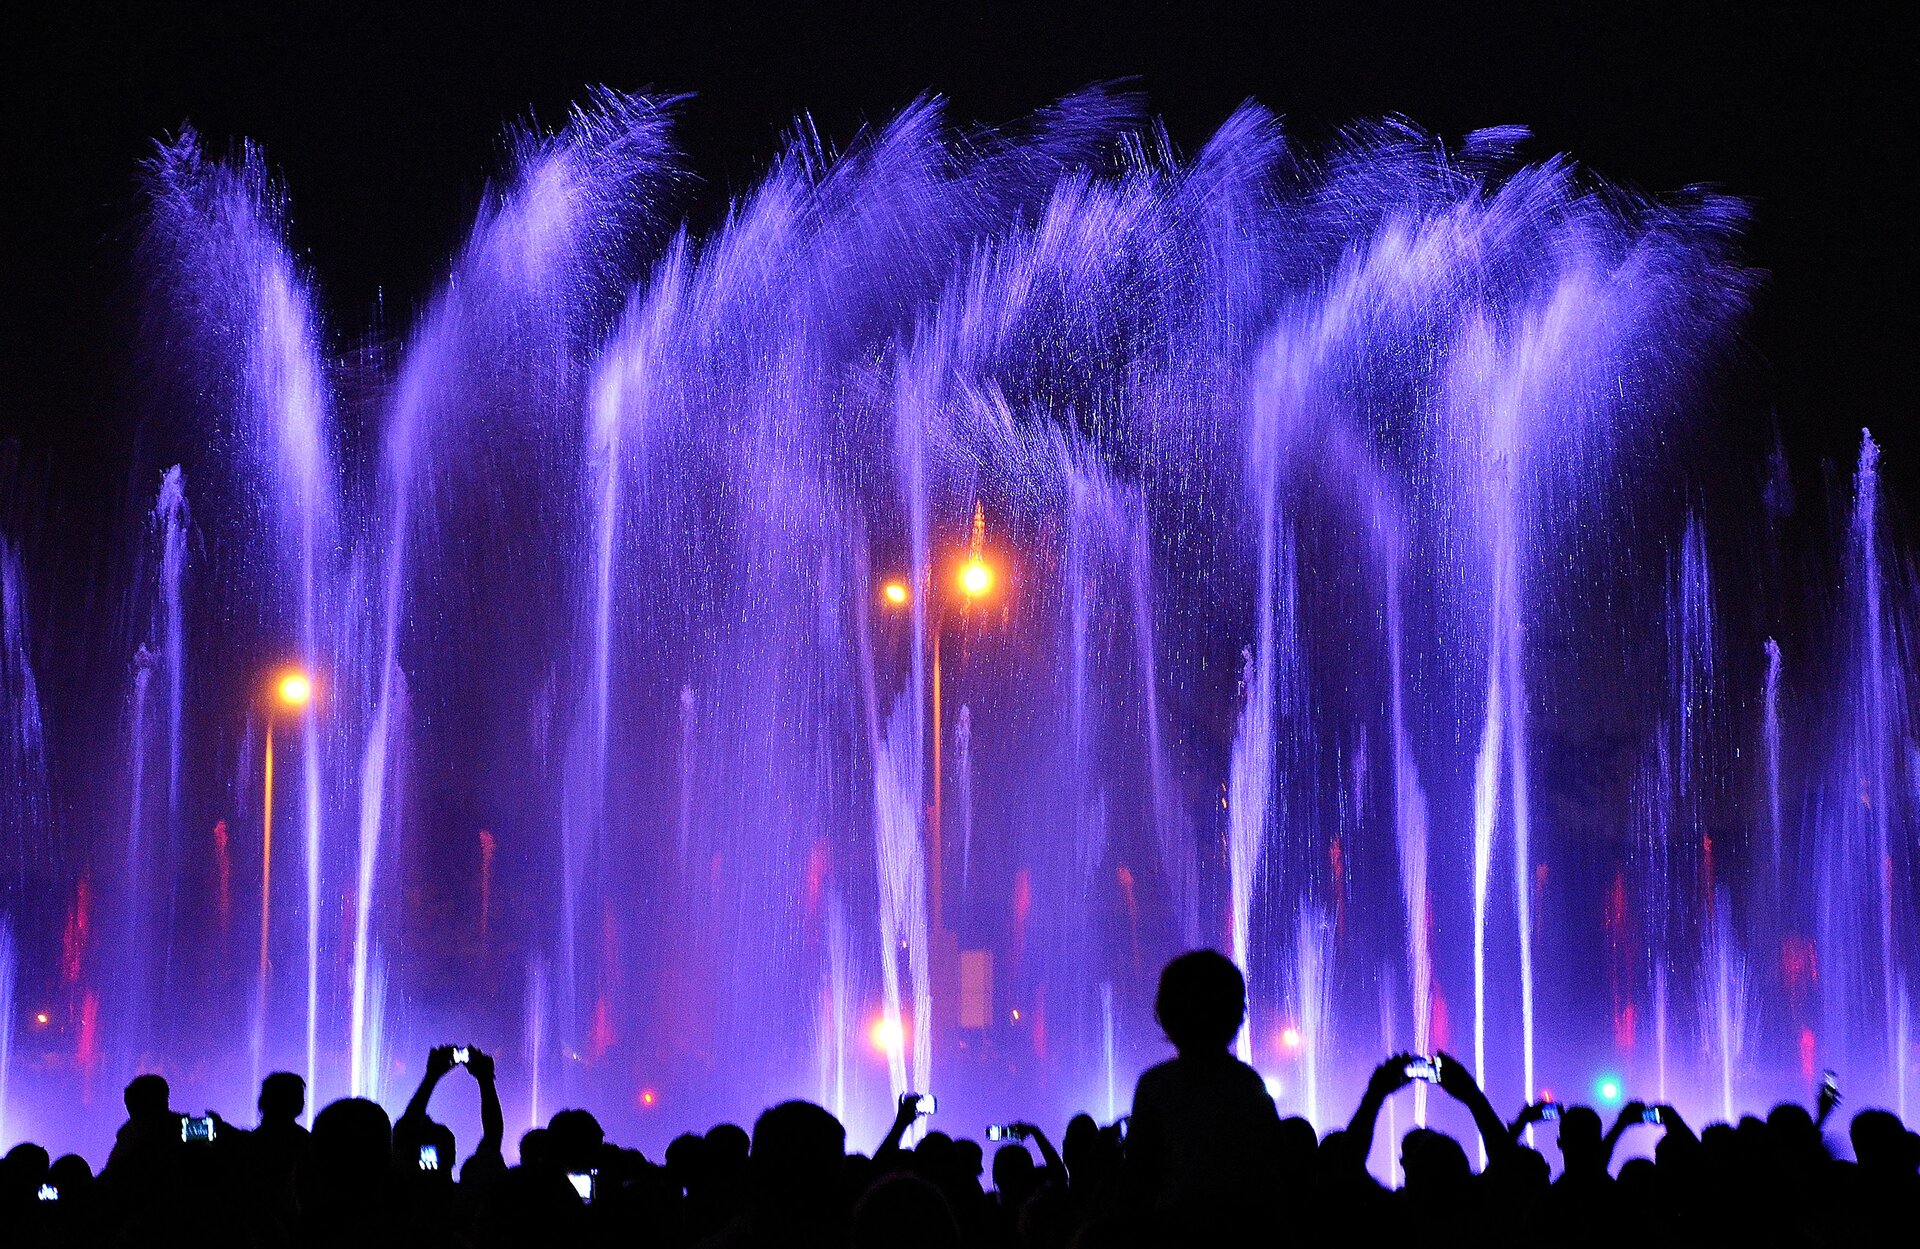 Zdjęcie przedstawia nocny świetlny pokaz fontann. Na pierwszym planie widać ciemne sylwetki tłumu oglądającego pokaz. Tryskające do góry strumienie wody podświetlone są fioletowym, różowym i białym światłem. 